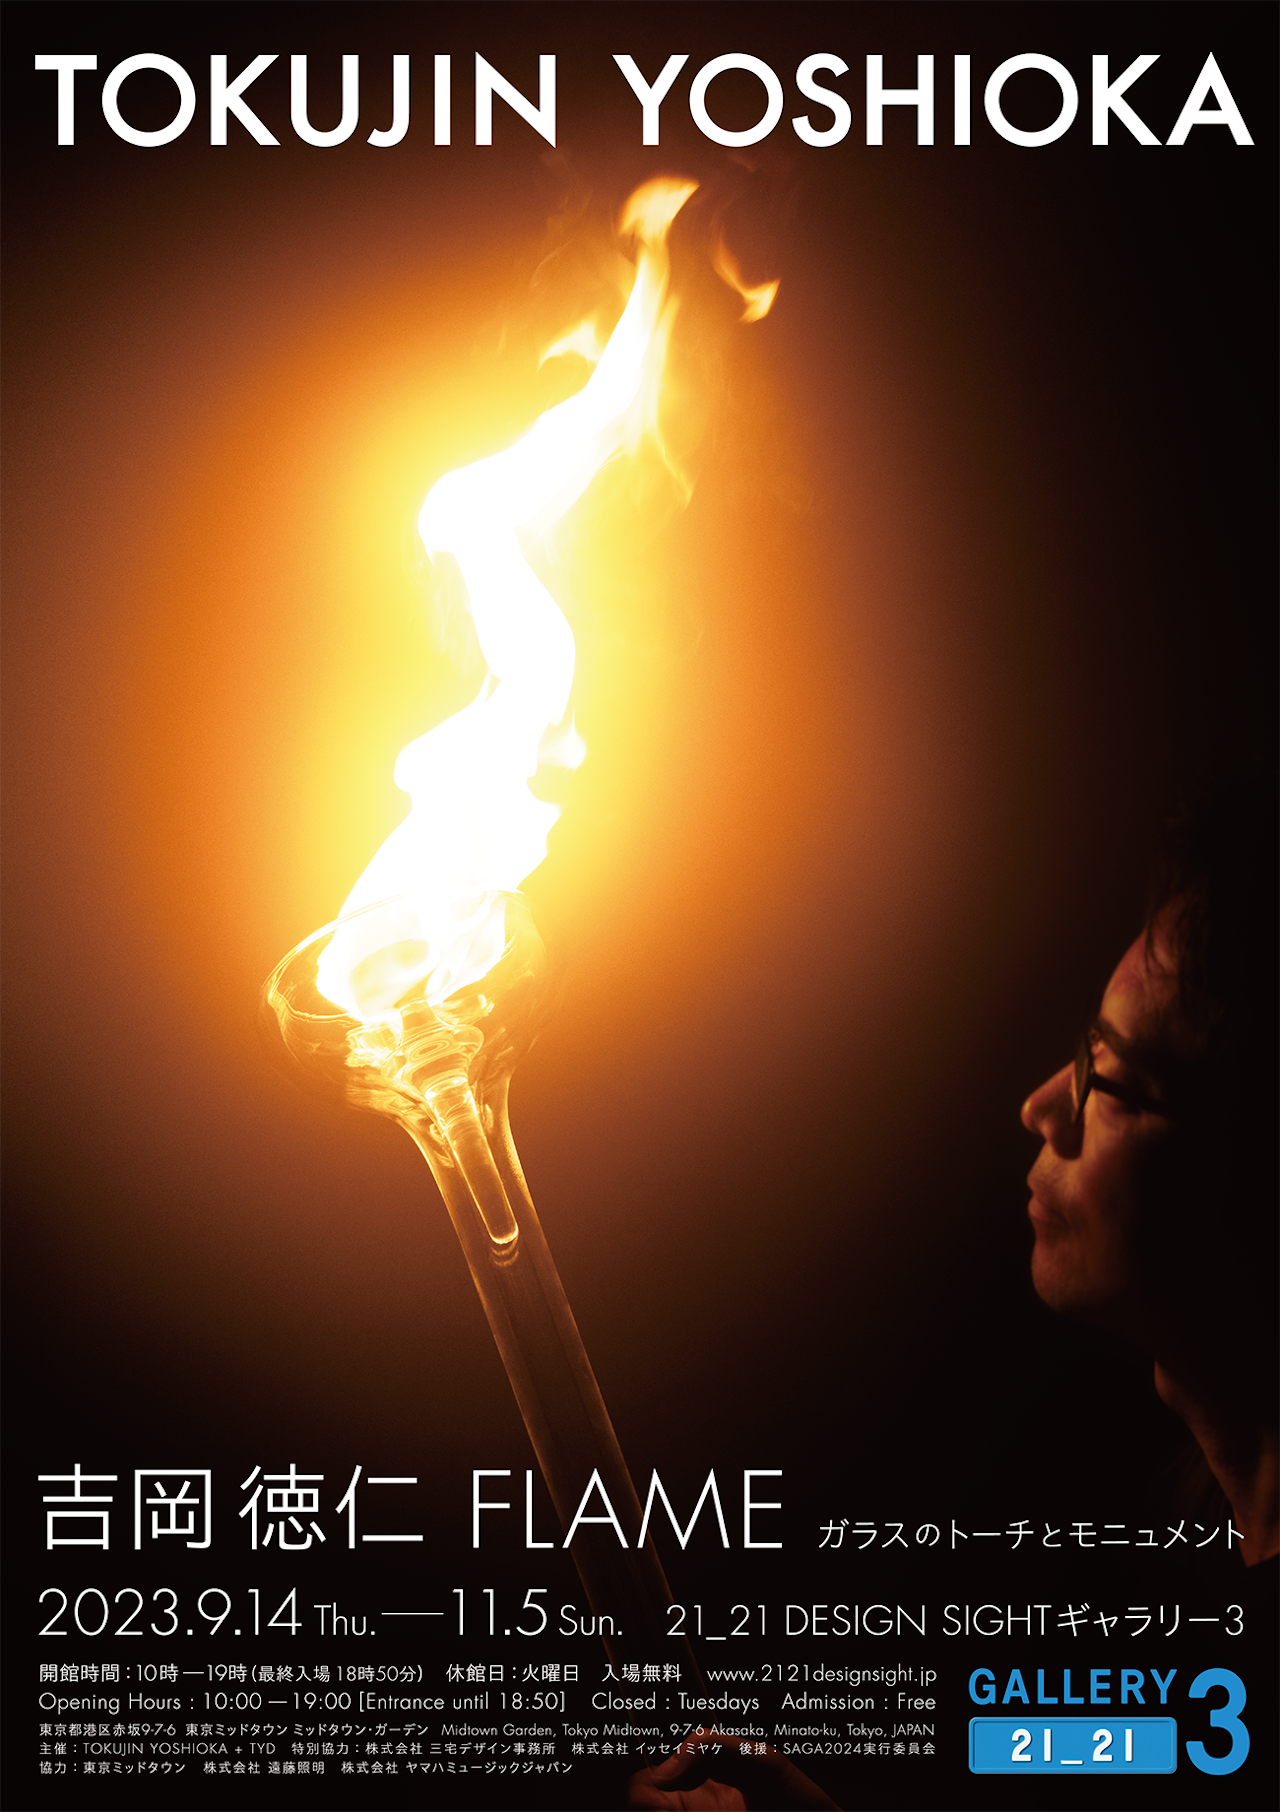 「吉岡徳仁 FLAME ガラスのトーチとモニュメント」展